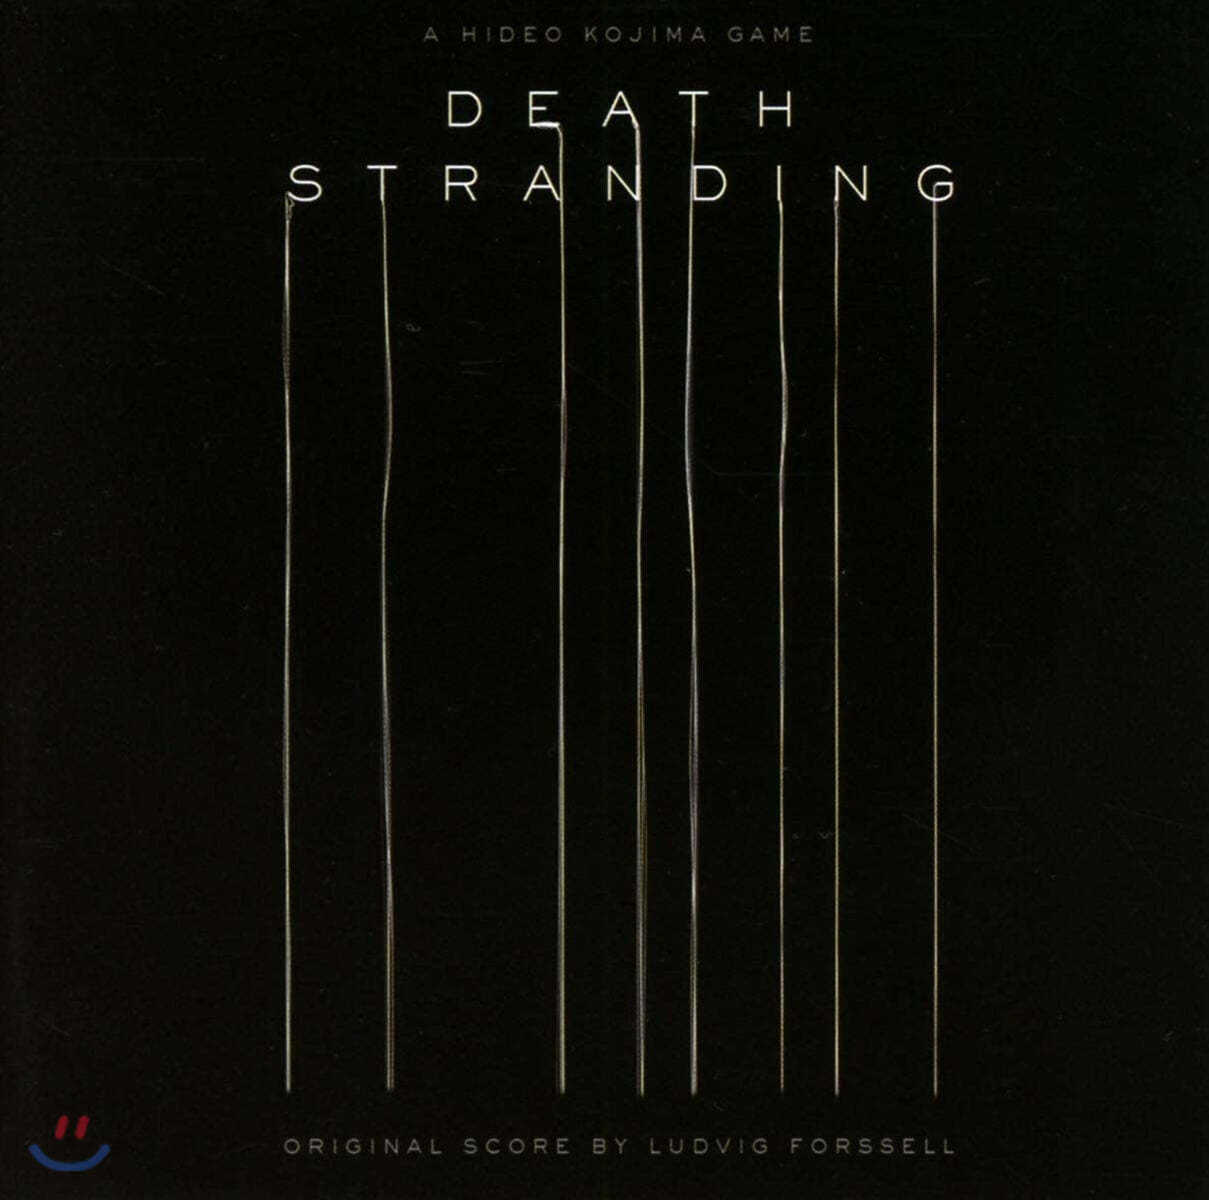 데스 스트랜딩 게임음악 [스코어] (Death Stranding Original Score by Ludvig Forssell)